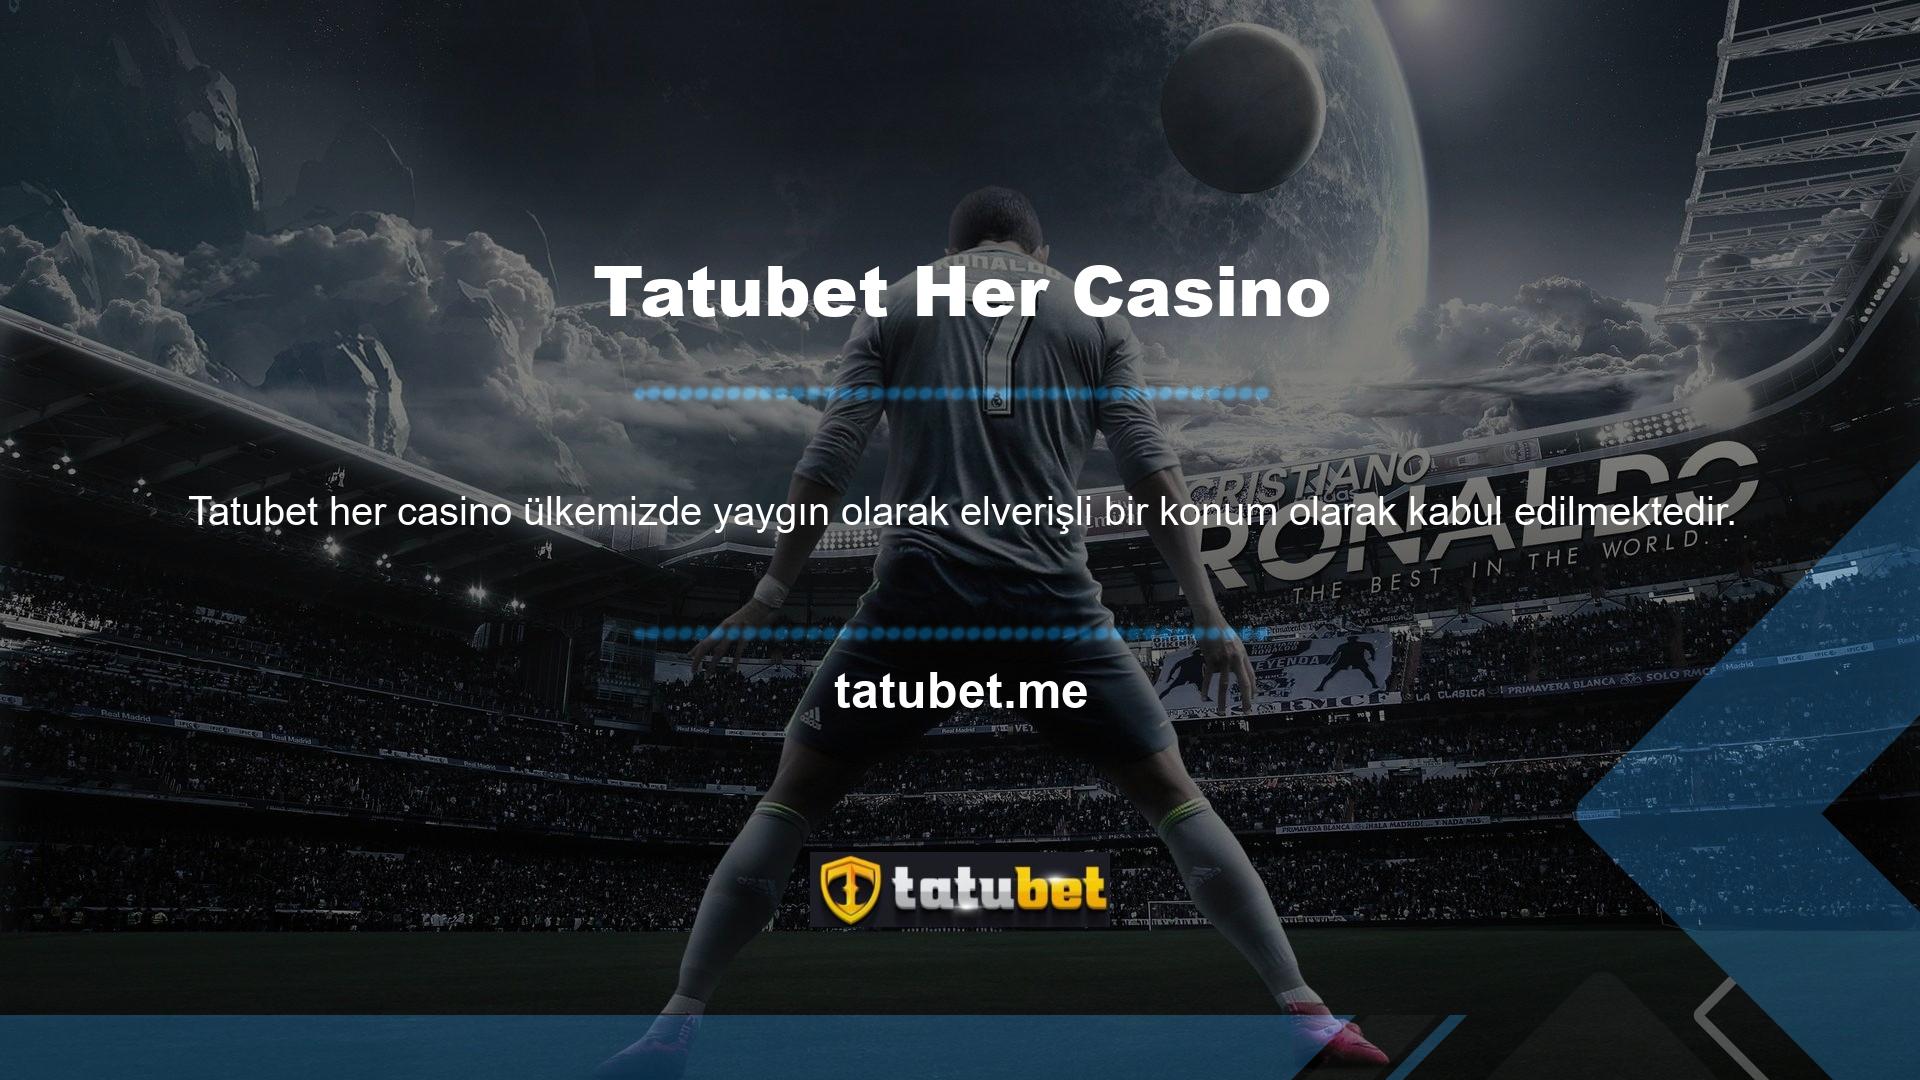 Casino sitelerinin fiziksel yerleri vardır ve yalnızca ülke içinde çevrimiçi hizmet vermektedir Halihazırda siteye mobil cihazınızdan erişim sağlıyorsanız, en kazançlı yasa dışı bahis sitelerinden biri olan Tatubet mobil uygulamasını kullanarak kazancınızı maksimuma çıkarabilirsiniz